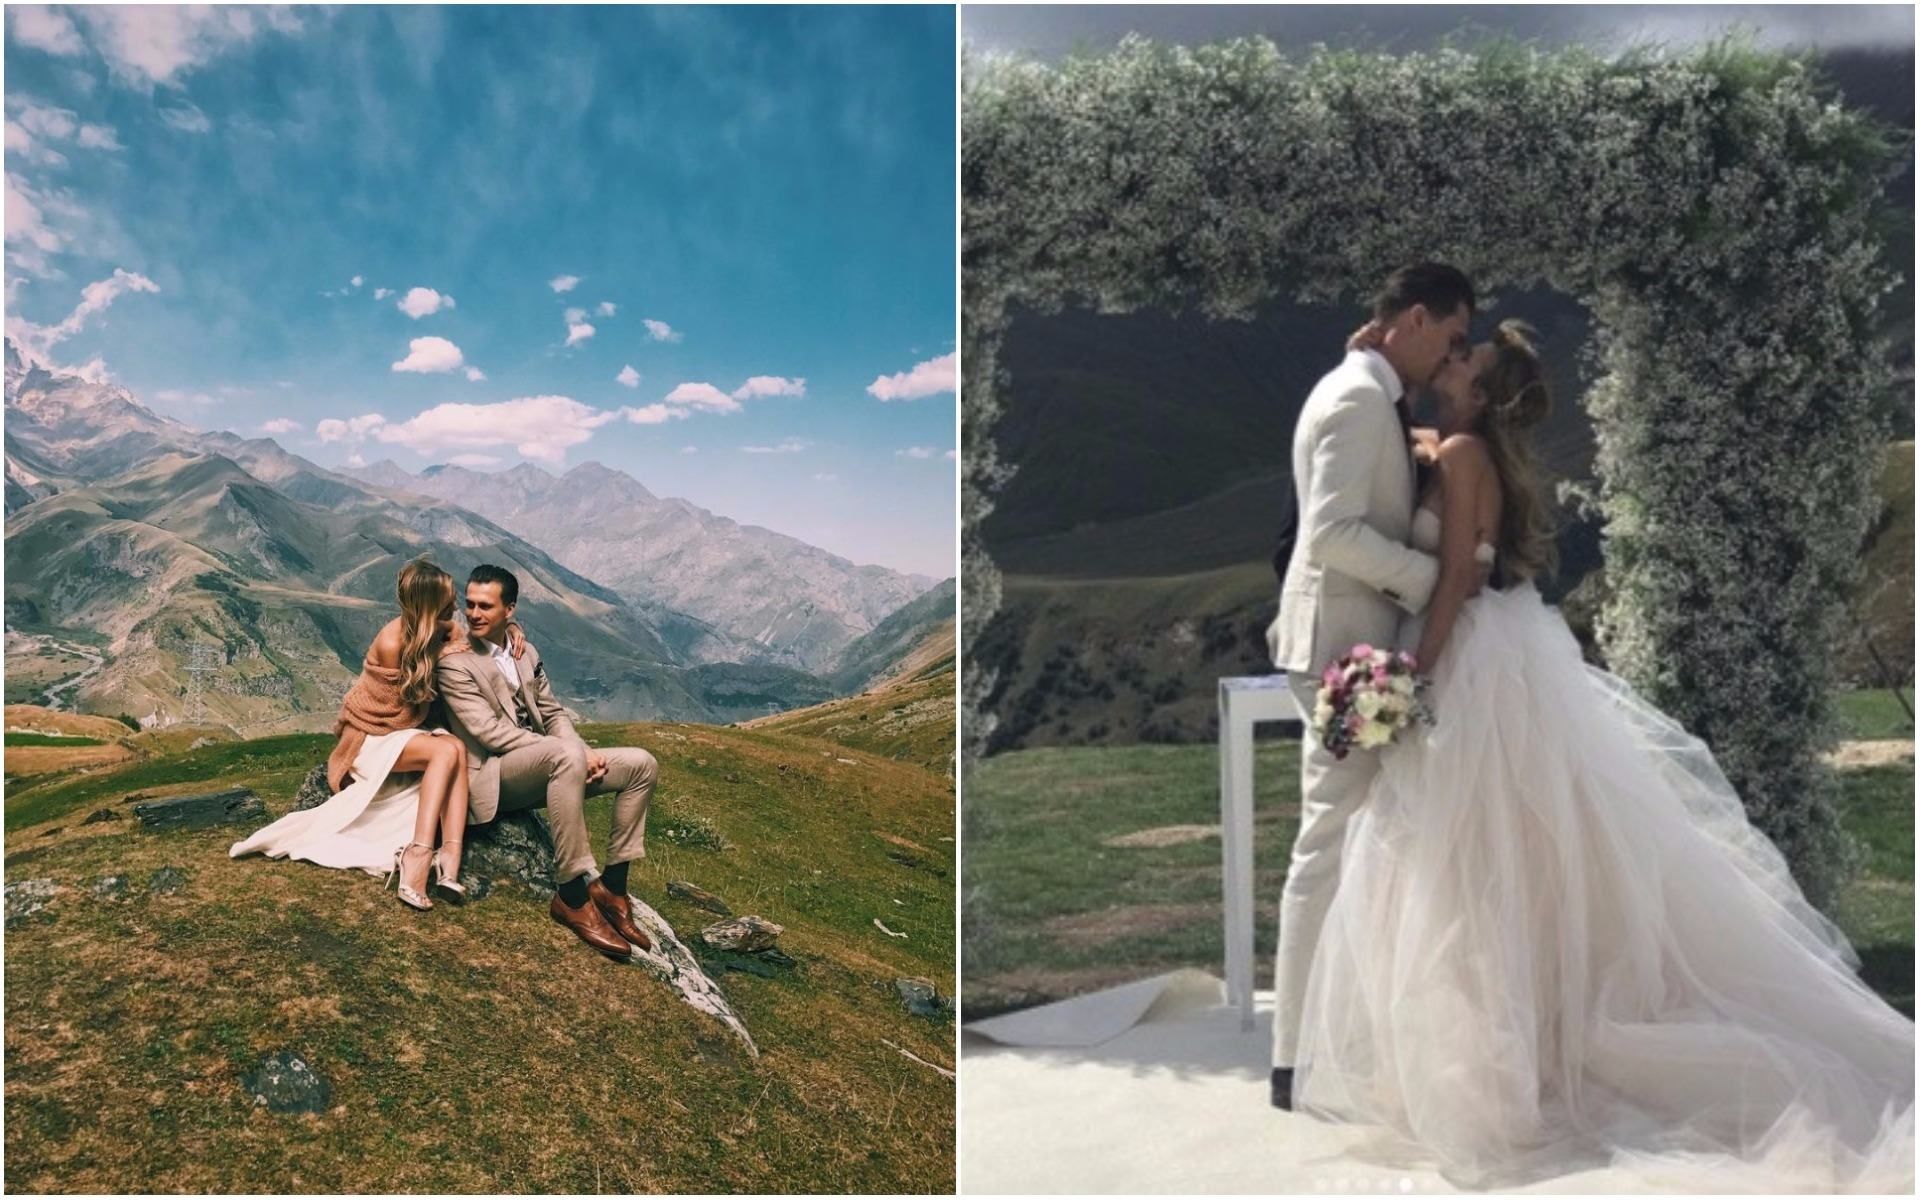 Свадьба Александа Скичко: новые фото свадьбы в Грузии